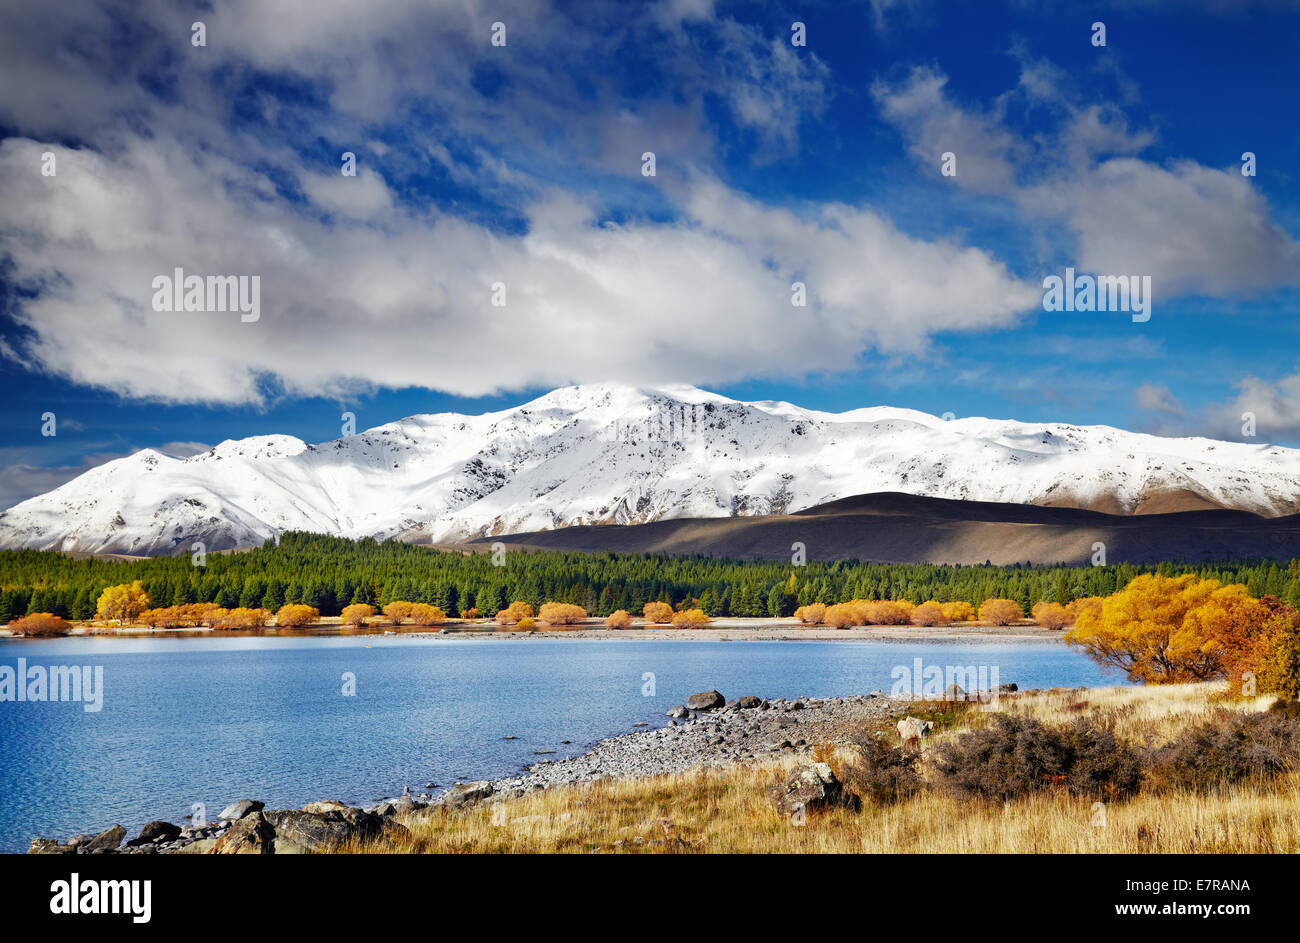 Mountain landscape, Lake Tekapo, New Zealand Stock Photo